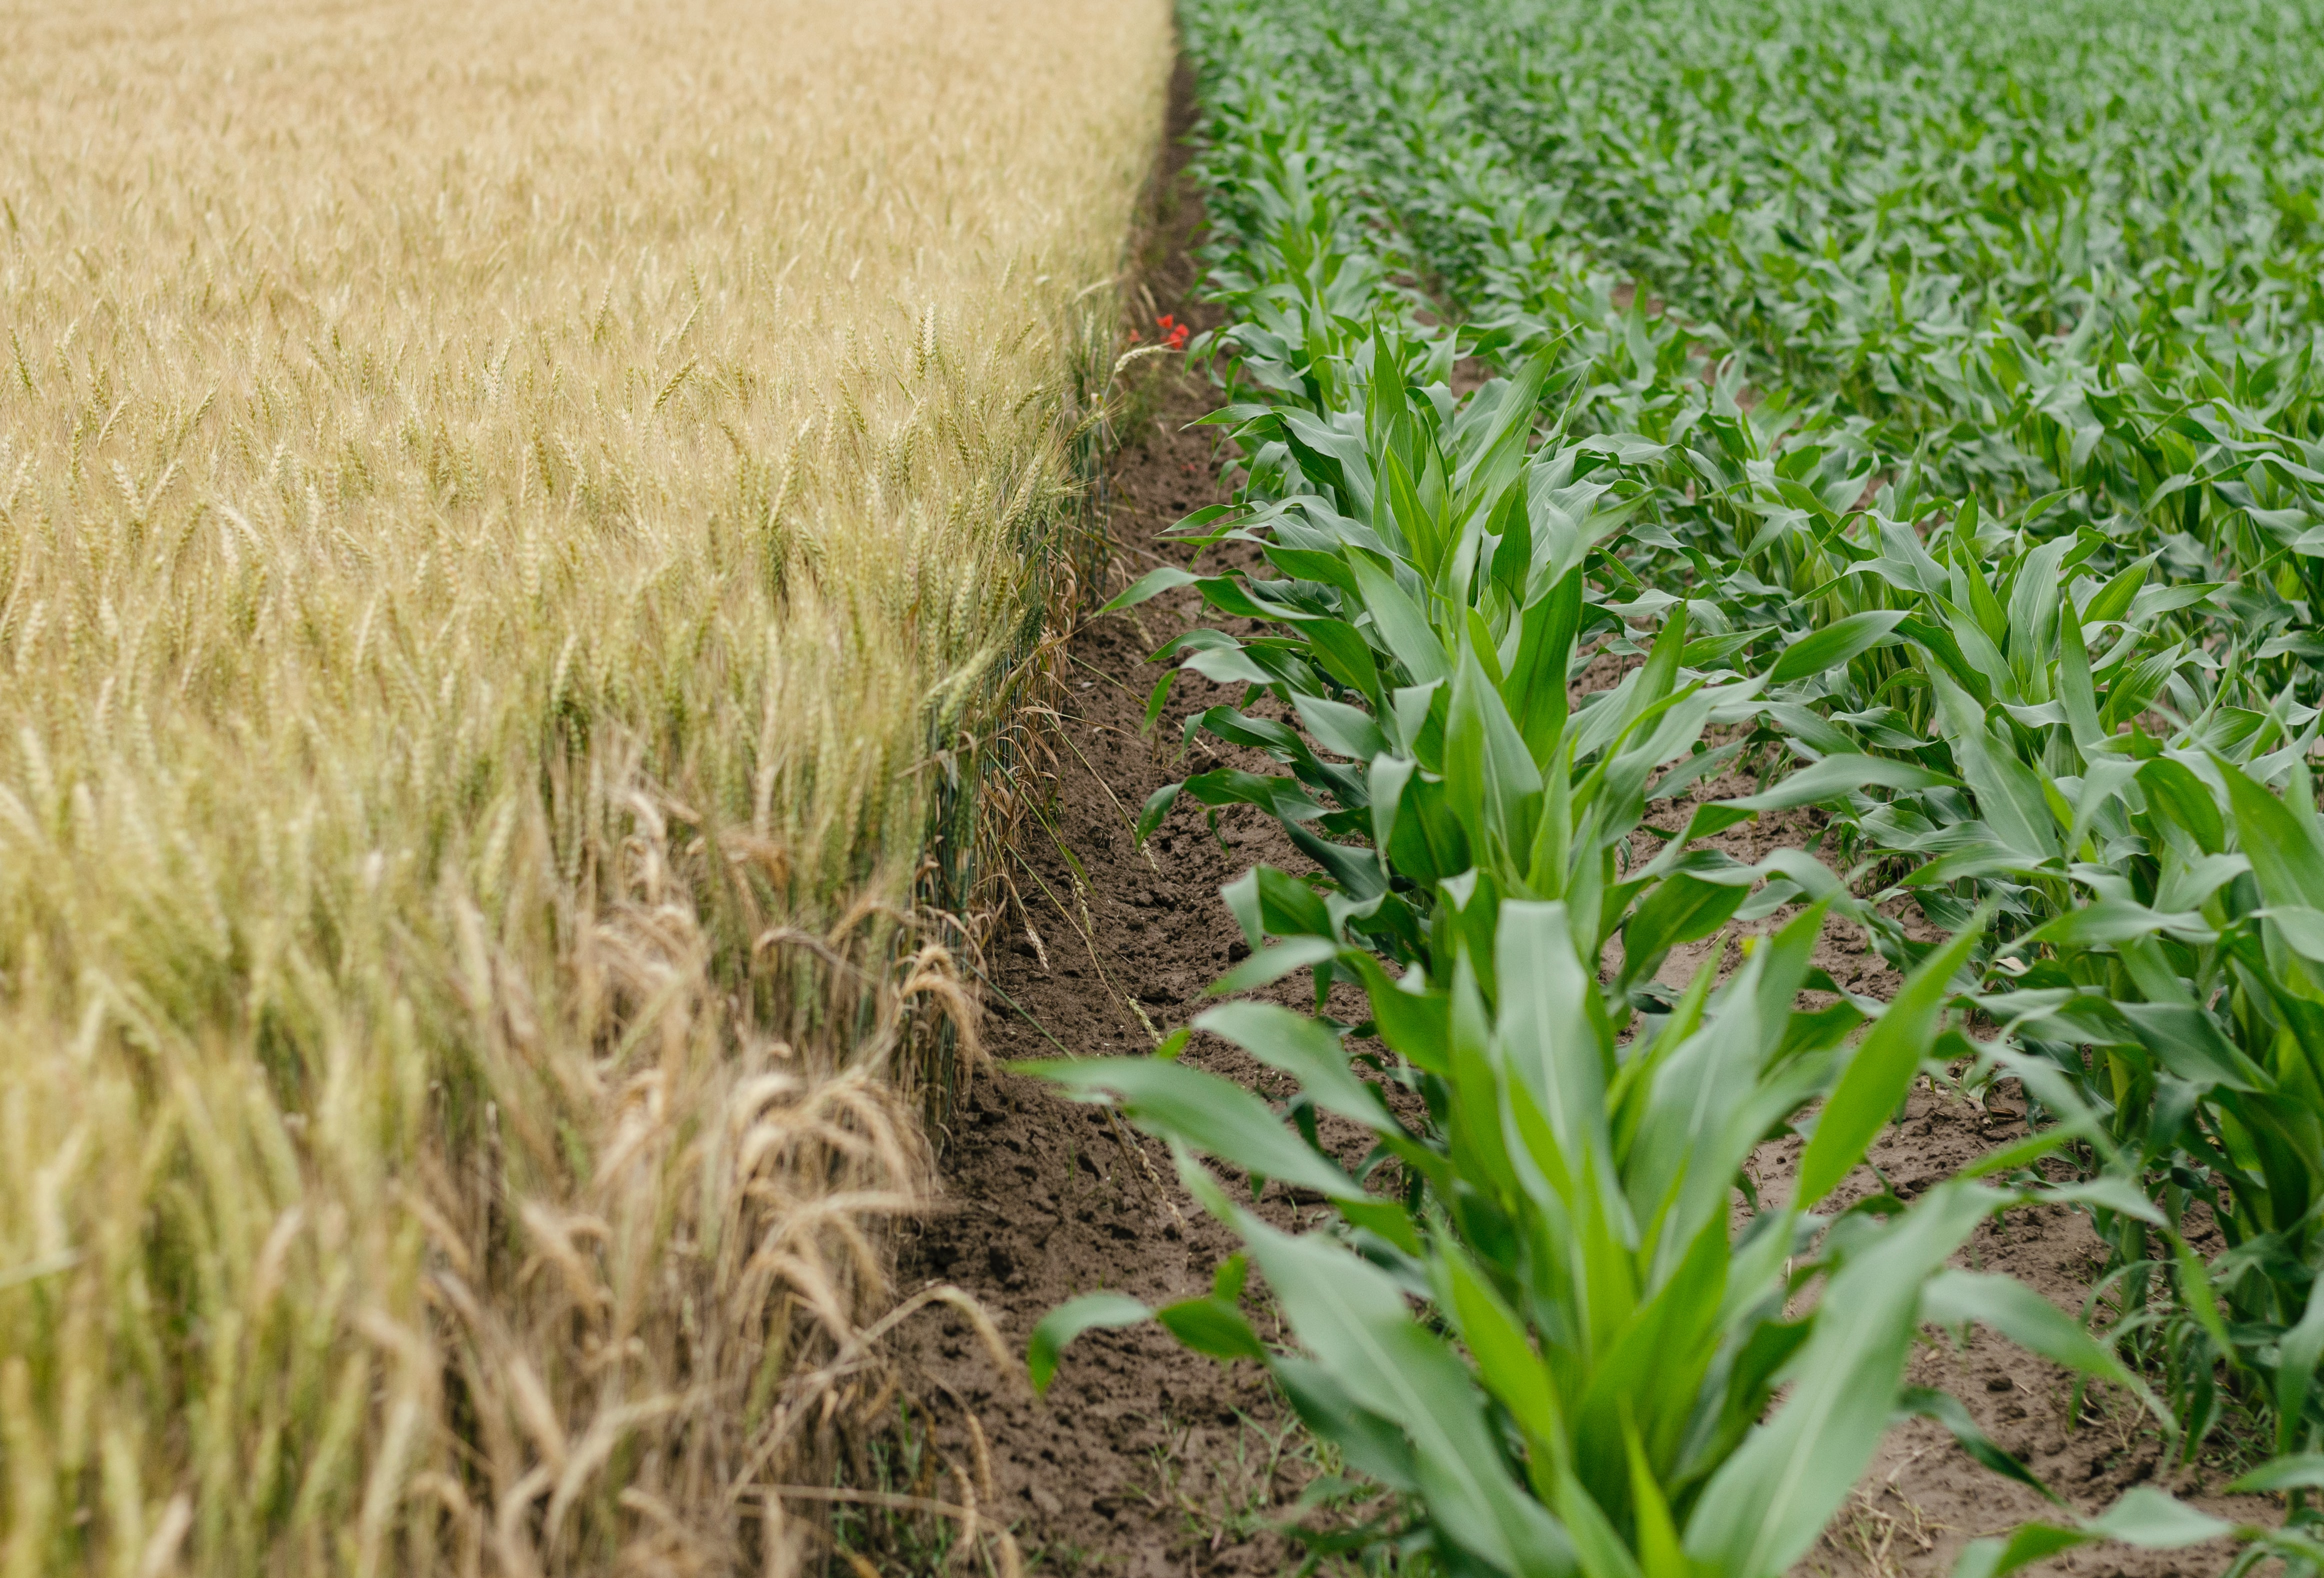 ERA-NET Cofund on Sustainable Crop Production